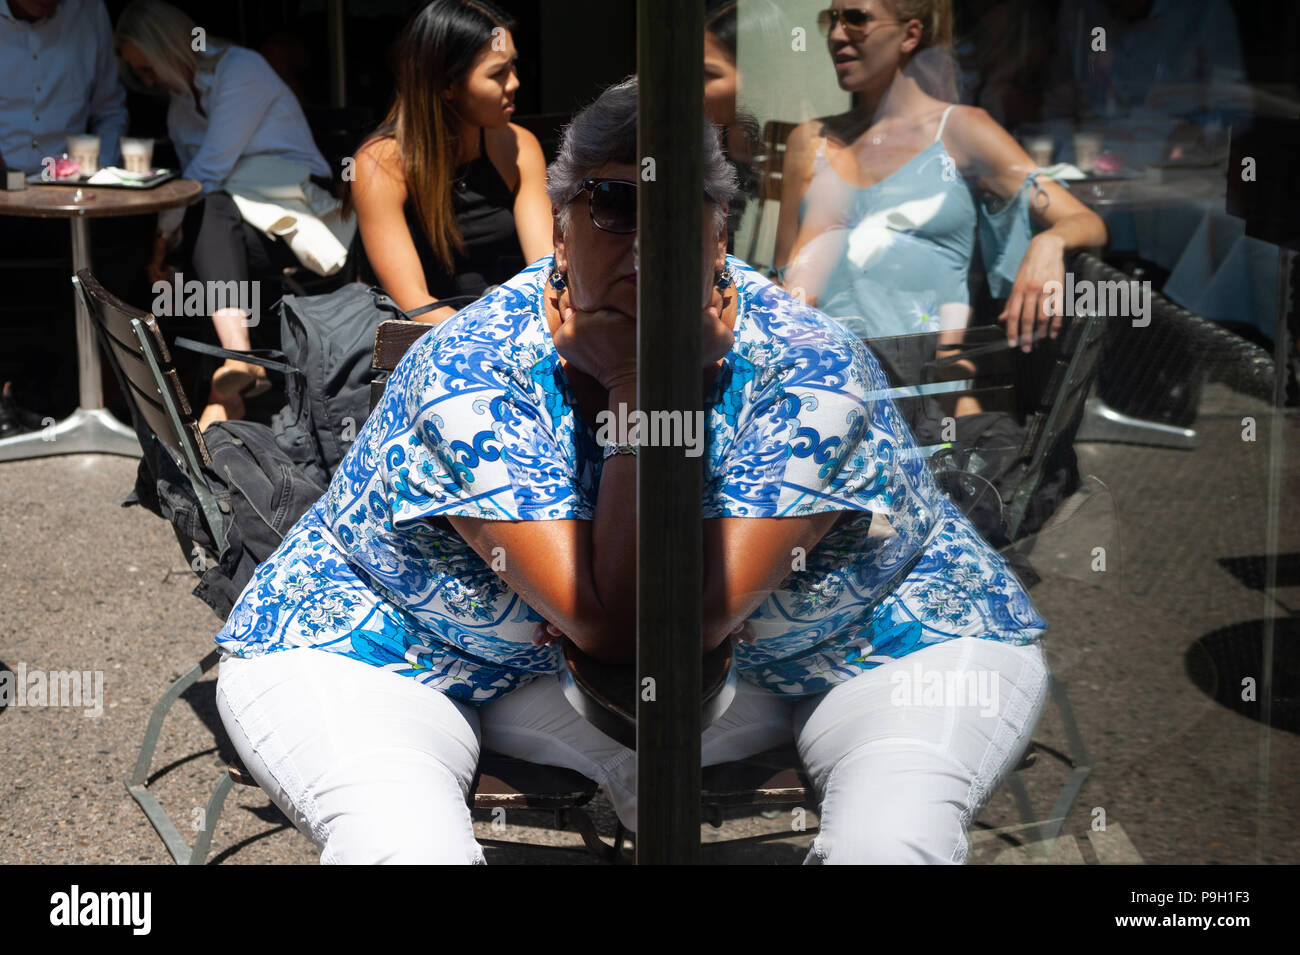 07.06.2018, Berlin, Deutschland, Europa - Menschen werden gesehen, sitzen in einem Café am Straßenrand entlang Kurfürstendamm in Berlin Charlottenburg. Stockfoto